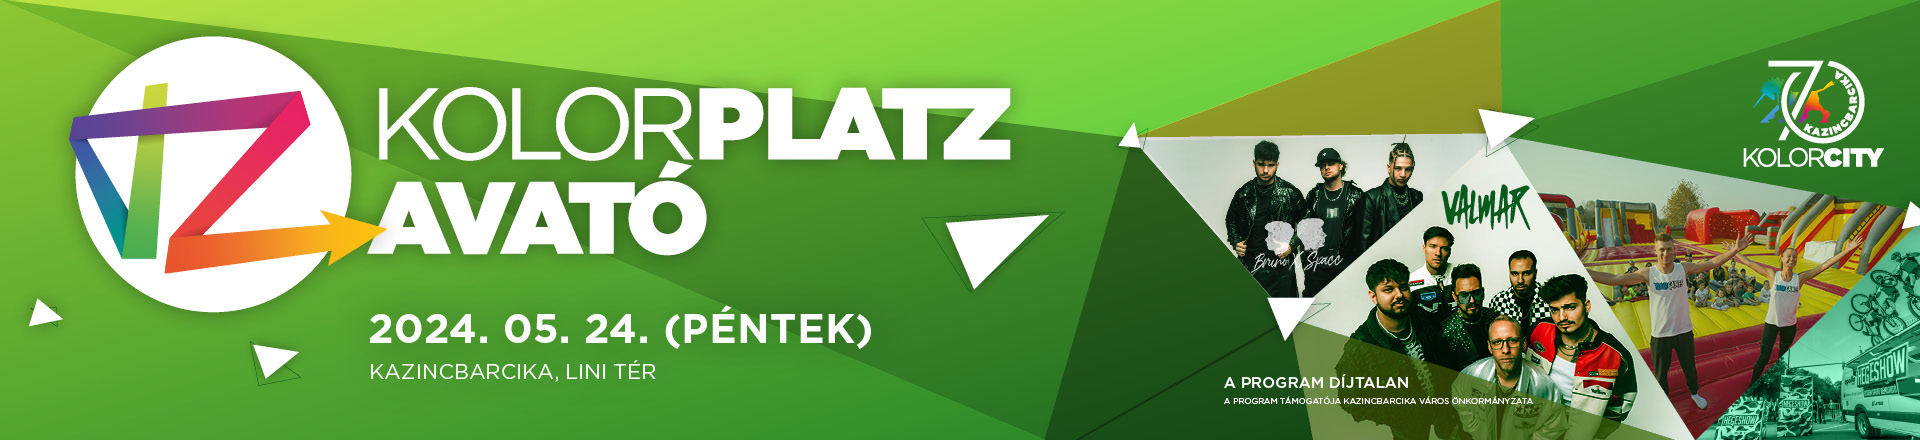 KolorPlatz-avató